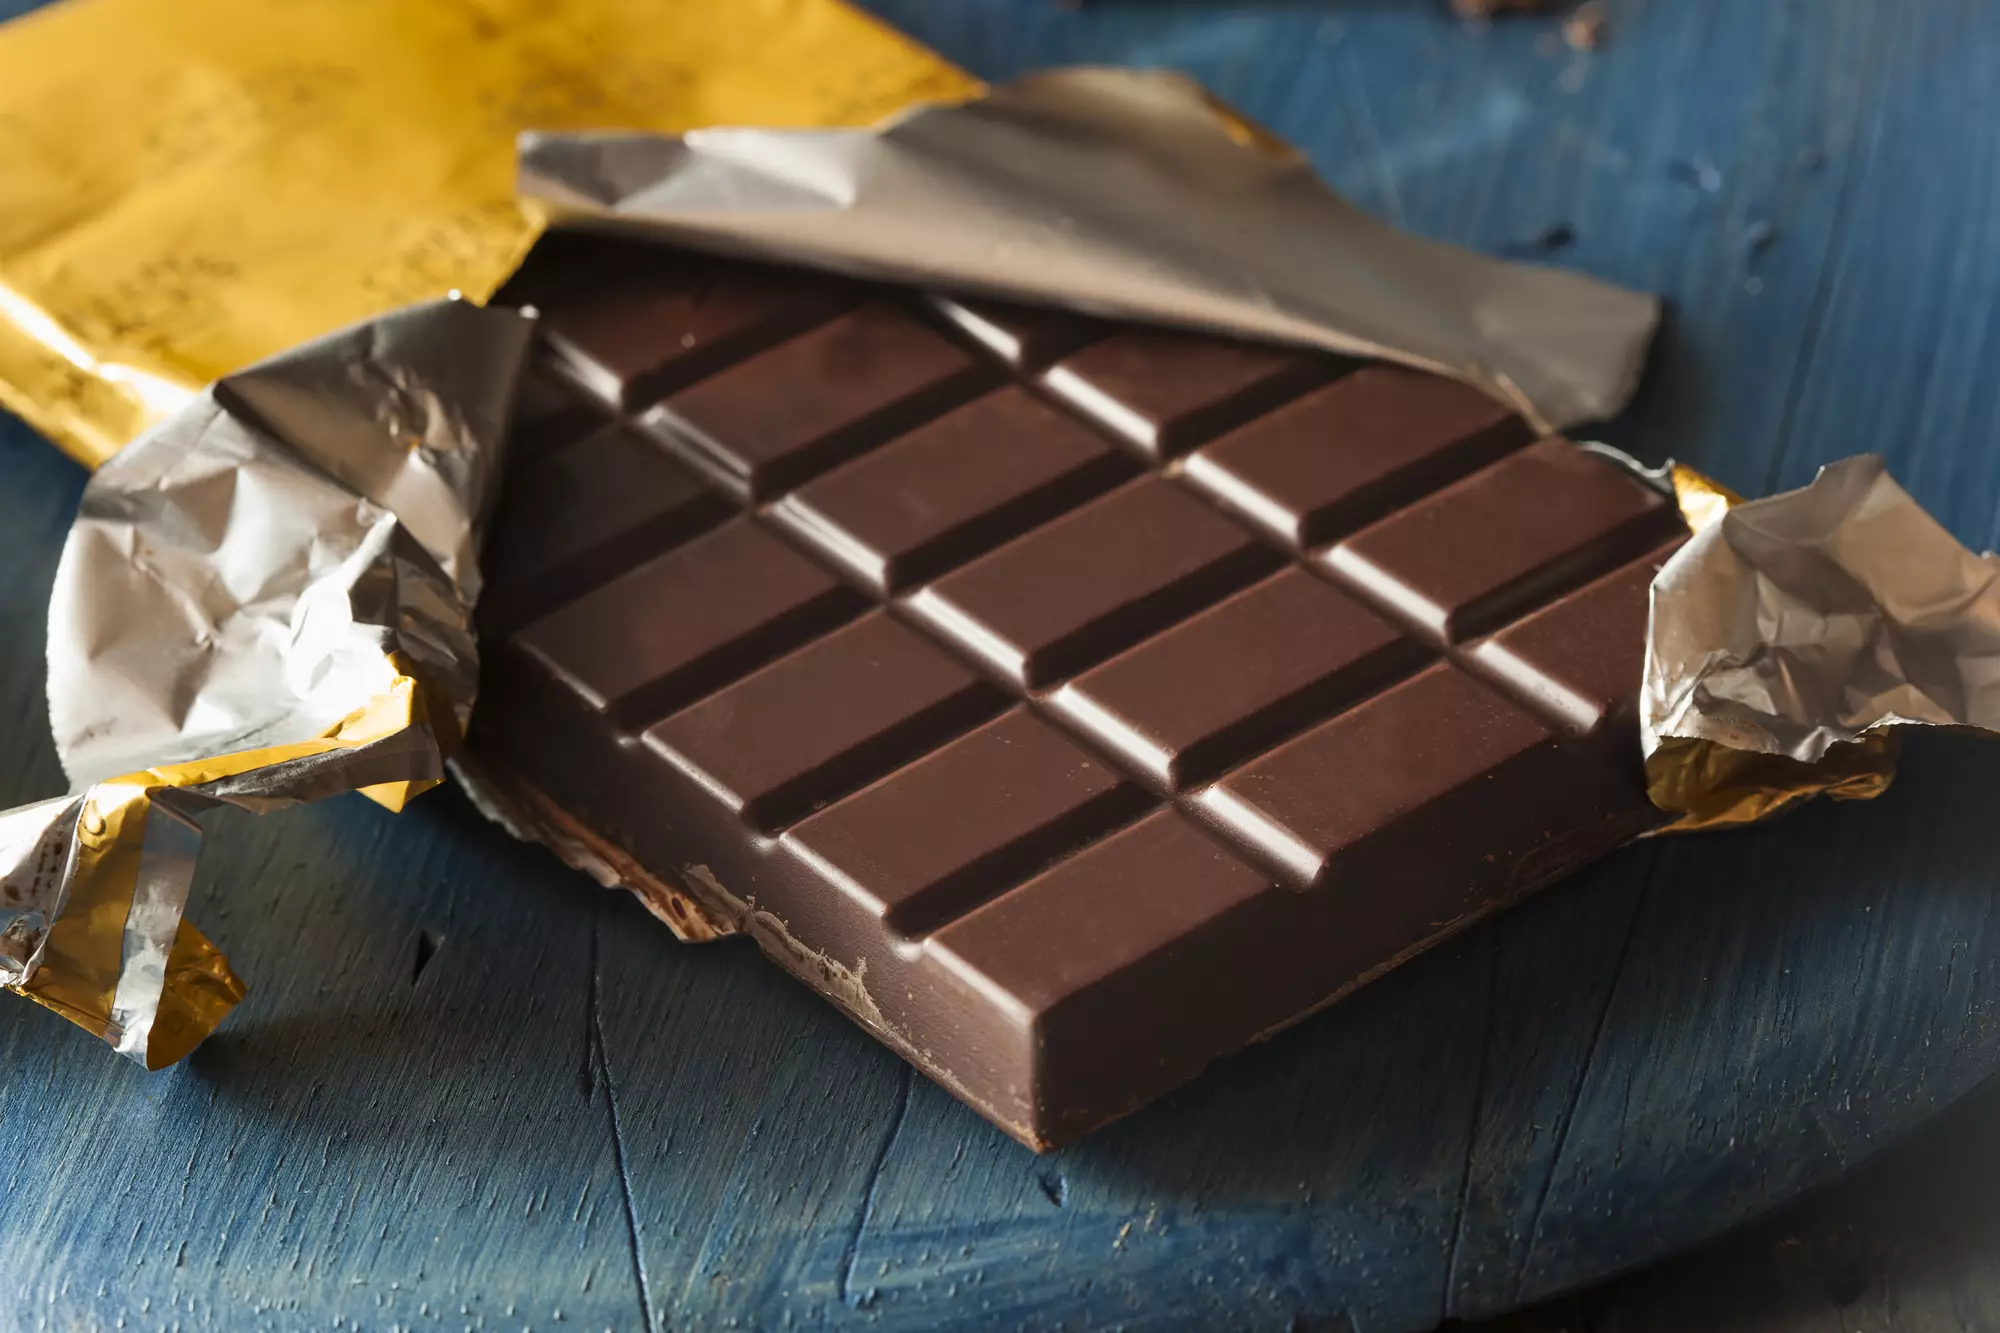 Діви – це найароматніший десертний шоколад